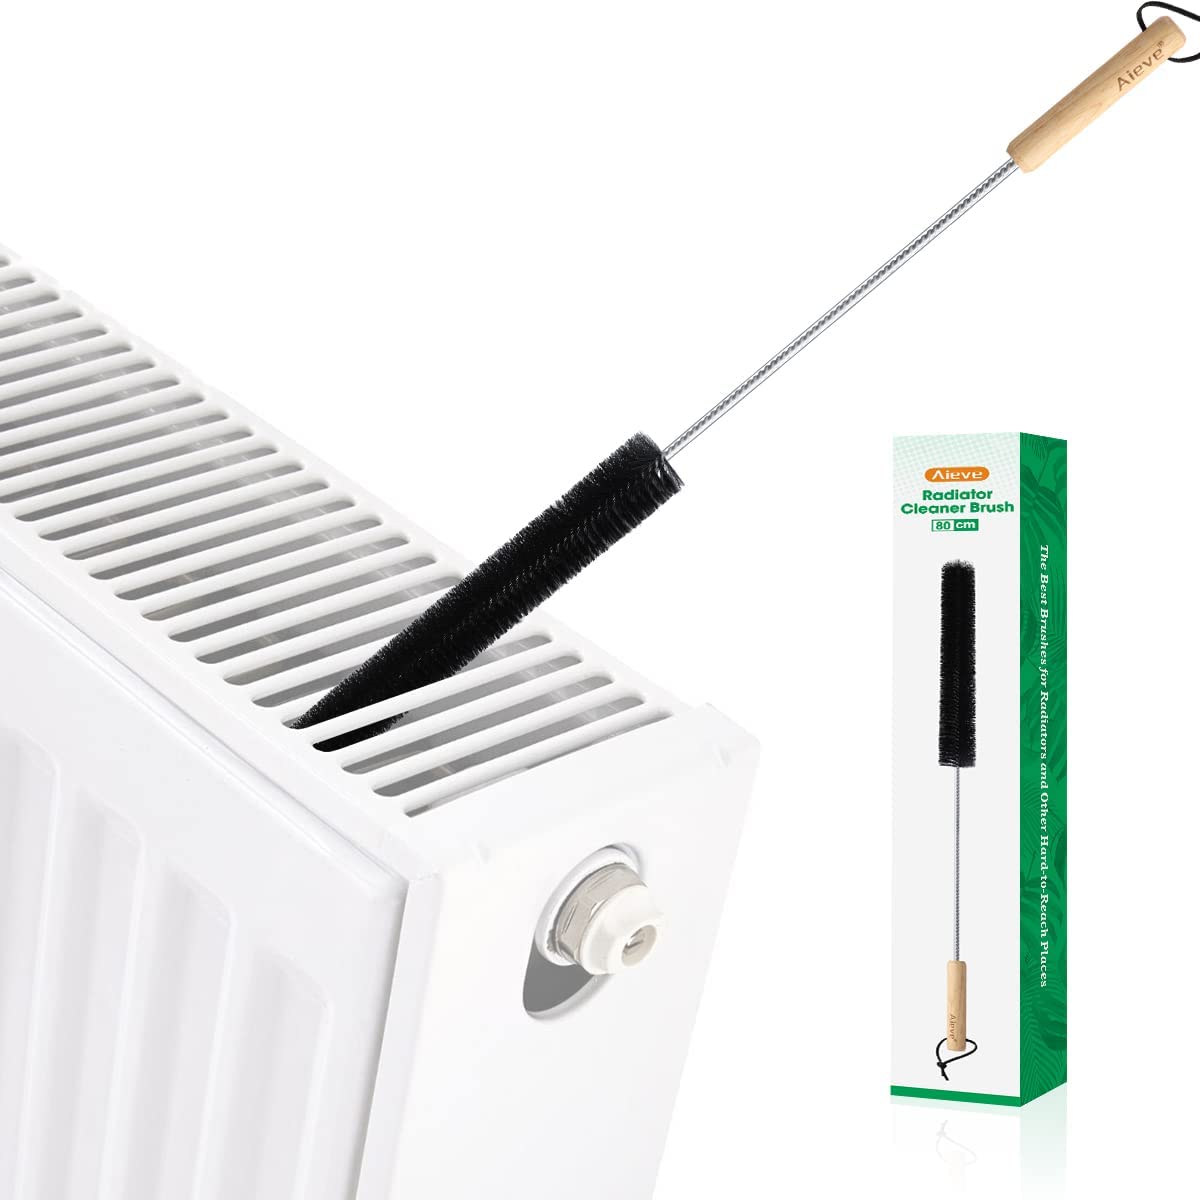 radiator cleaning brush for dusting inside radiator fins